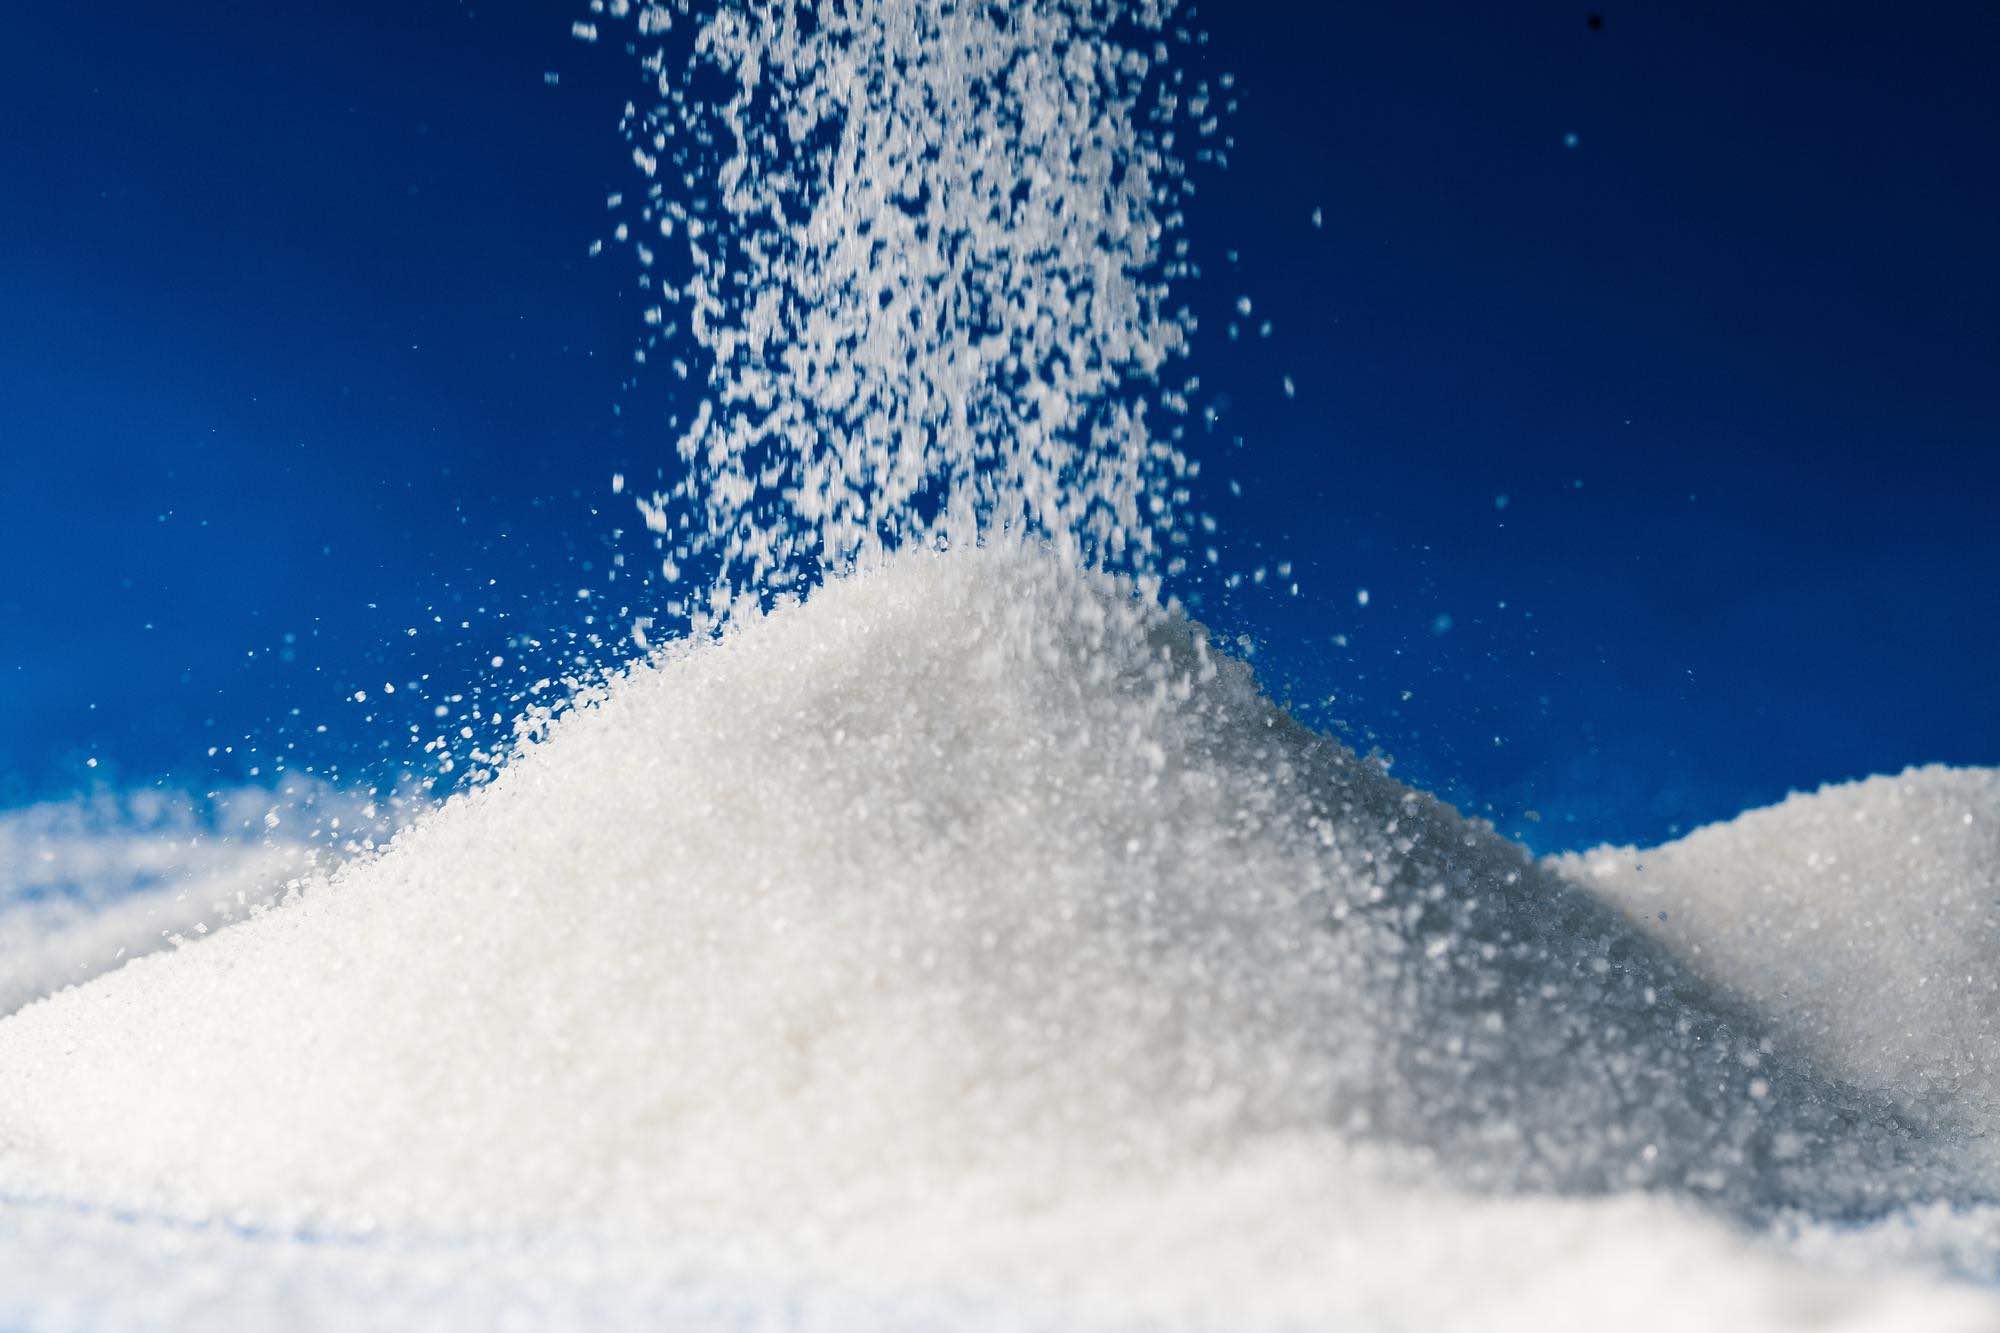 إنجازات شركة الشرقية لصناعة السكر: تلبية 15% من الاستهلاك المحلي وتوسعة التصدير للدول العربية والأوروبية